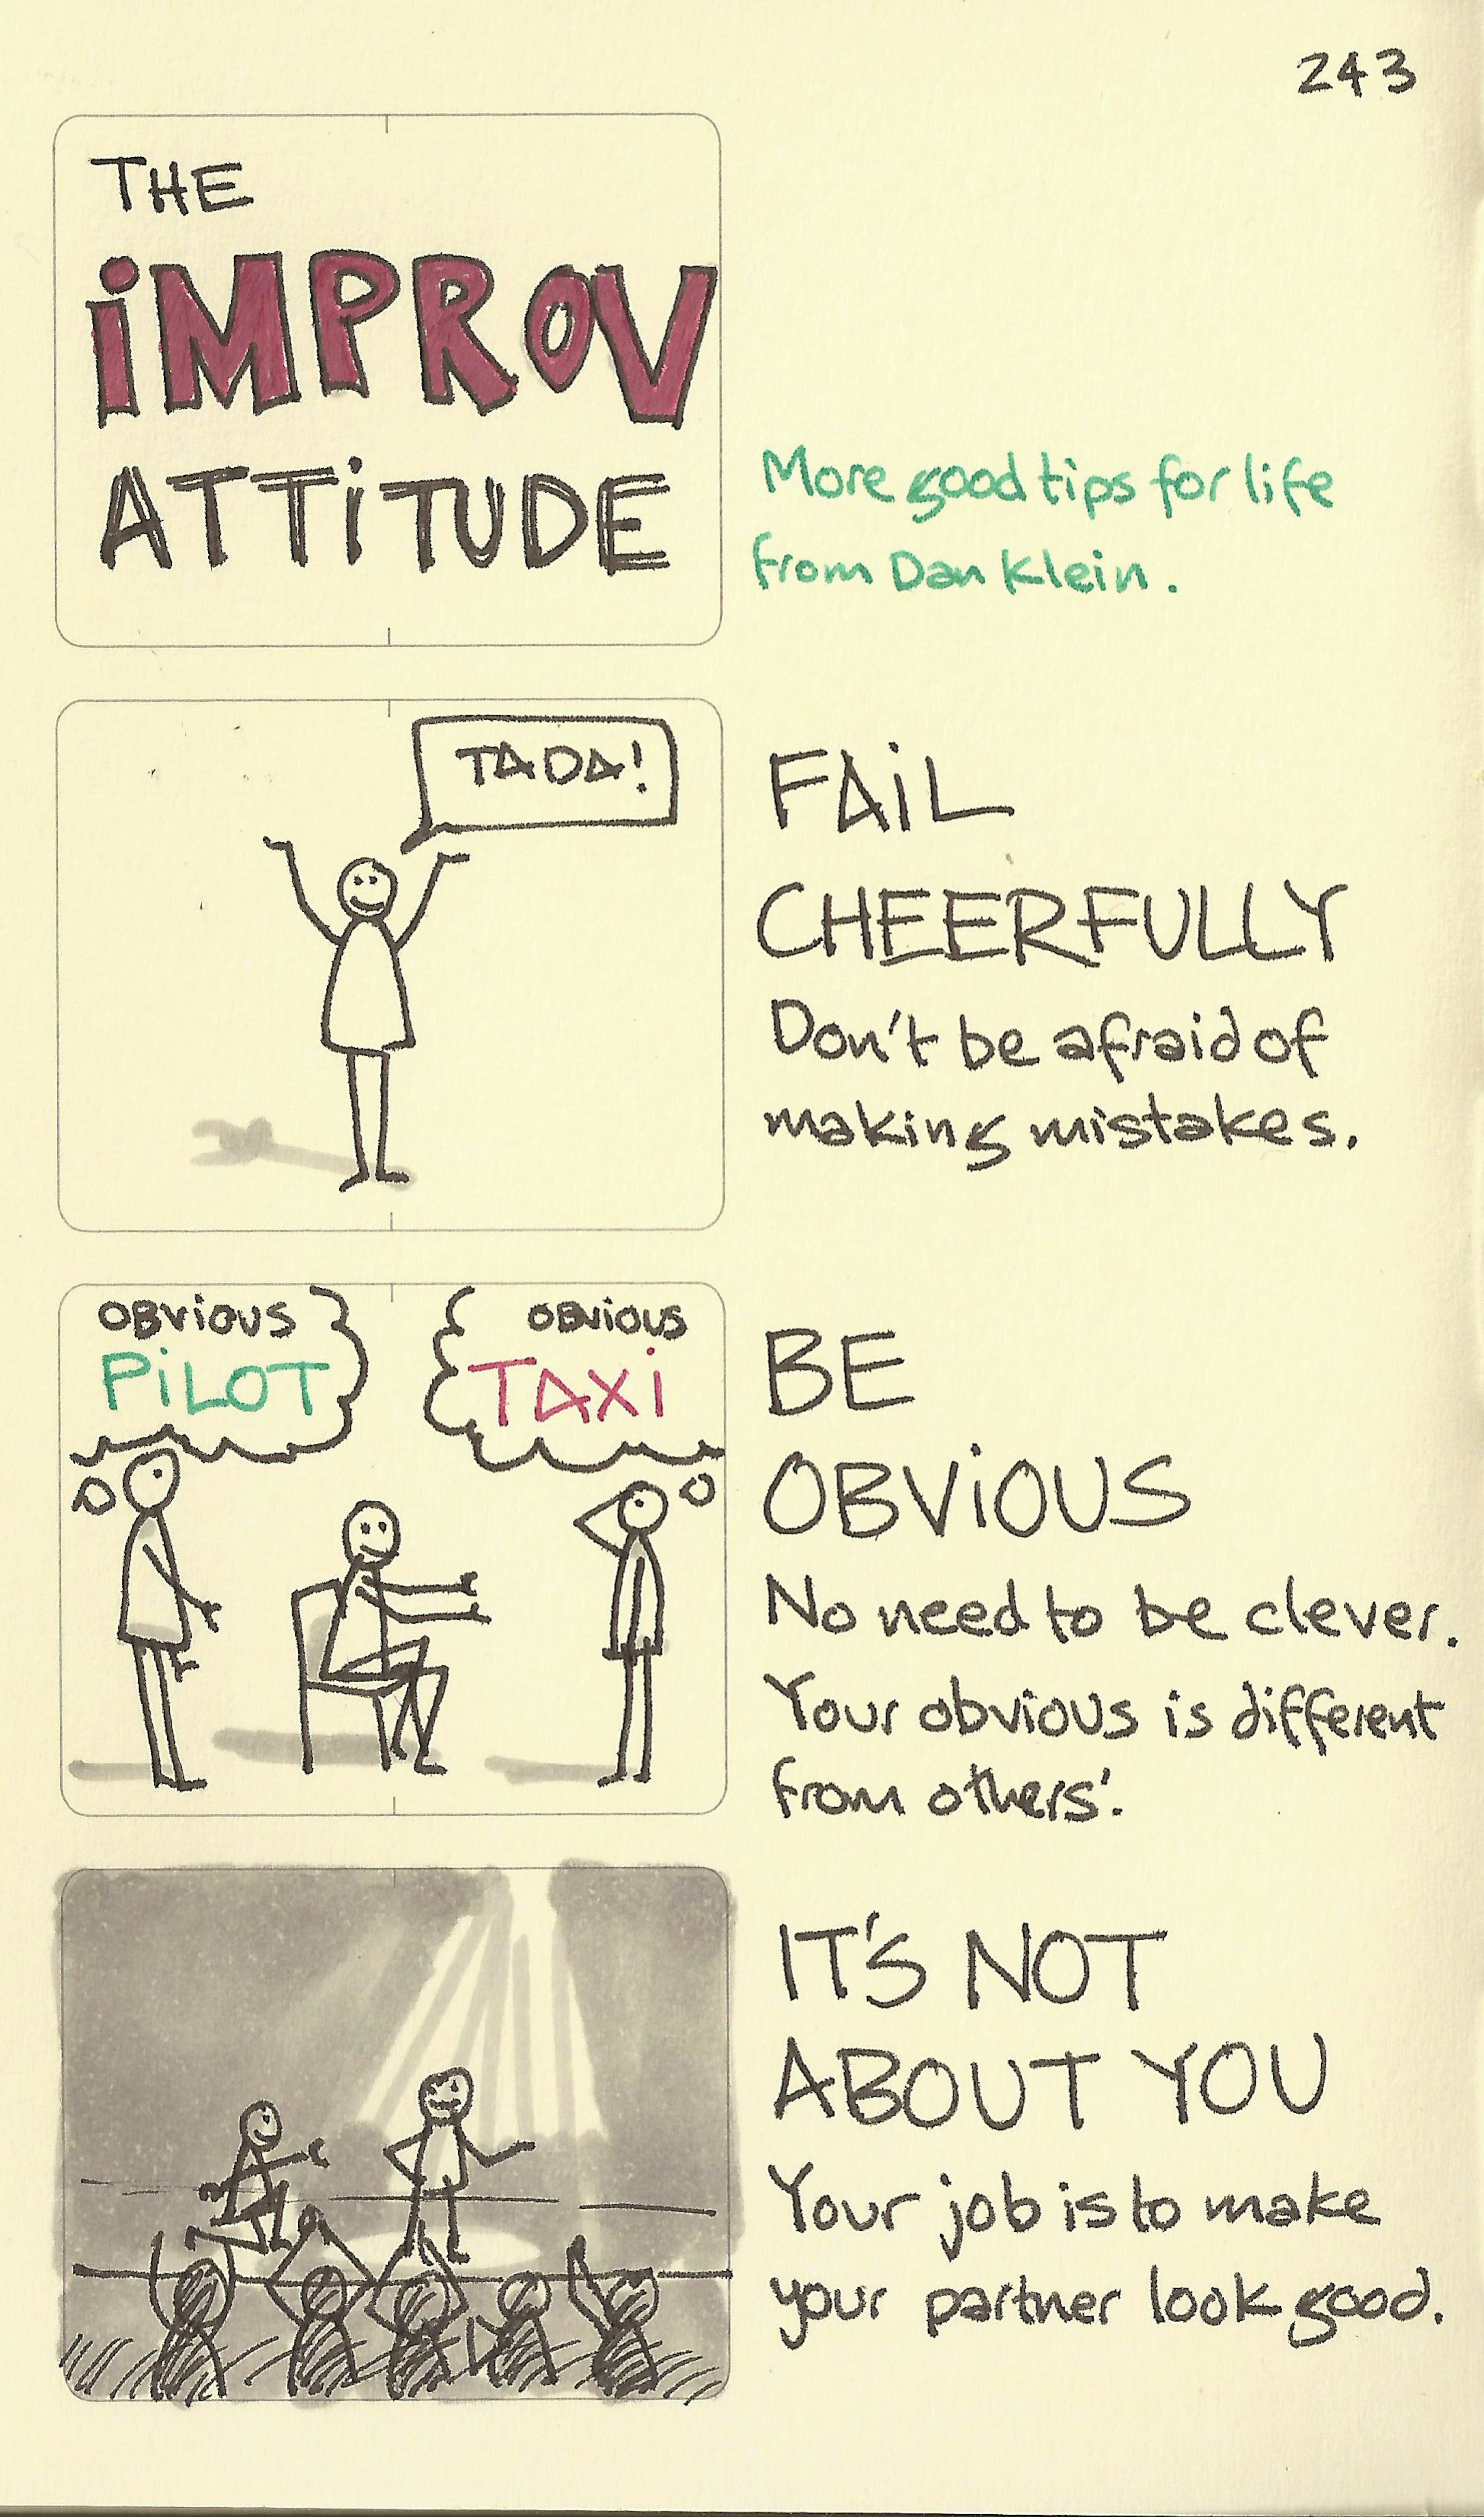 The improv attitude - Sketchplanations